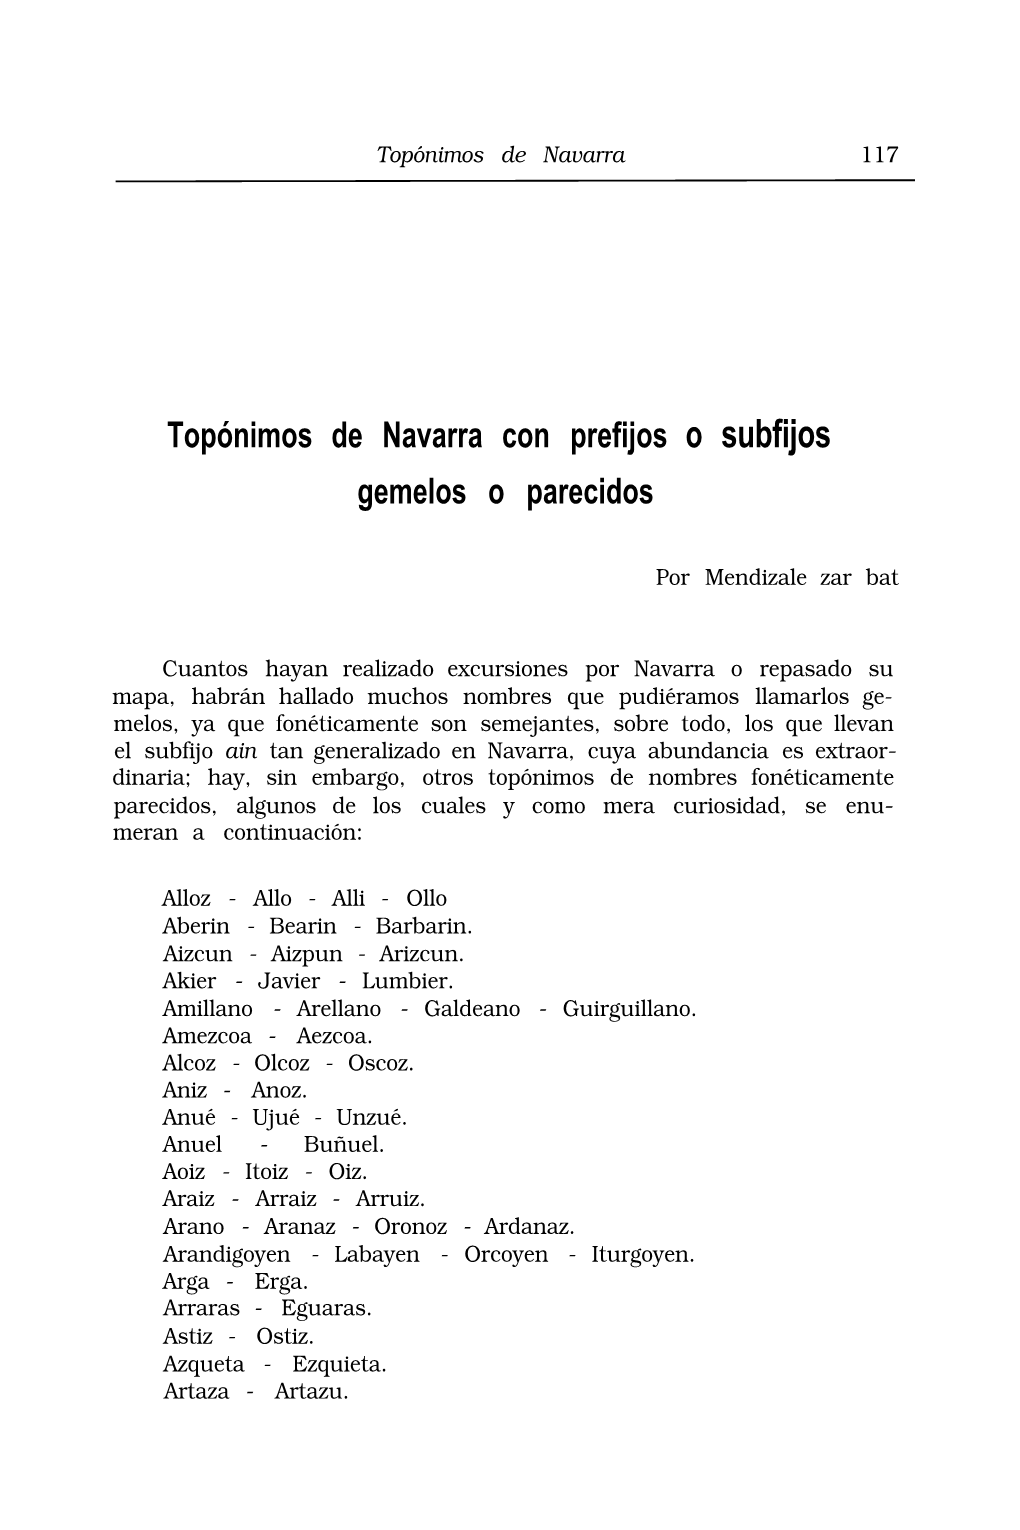 Topónimos De Navarra Con Prefijos O Subfijos Gemelos O Parecidos